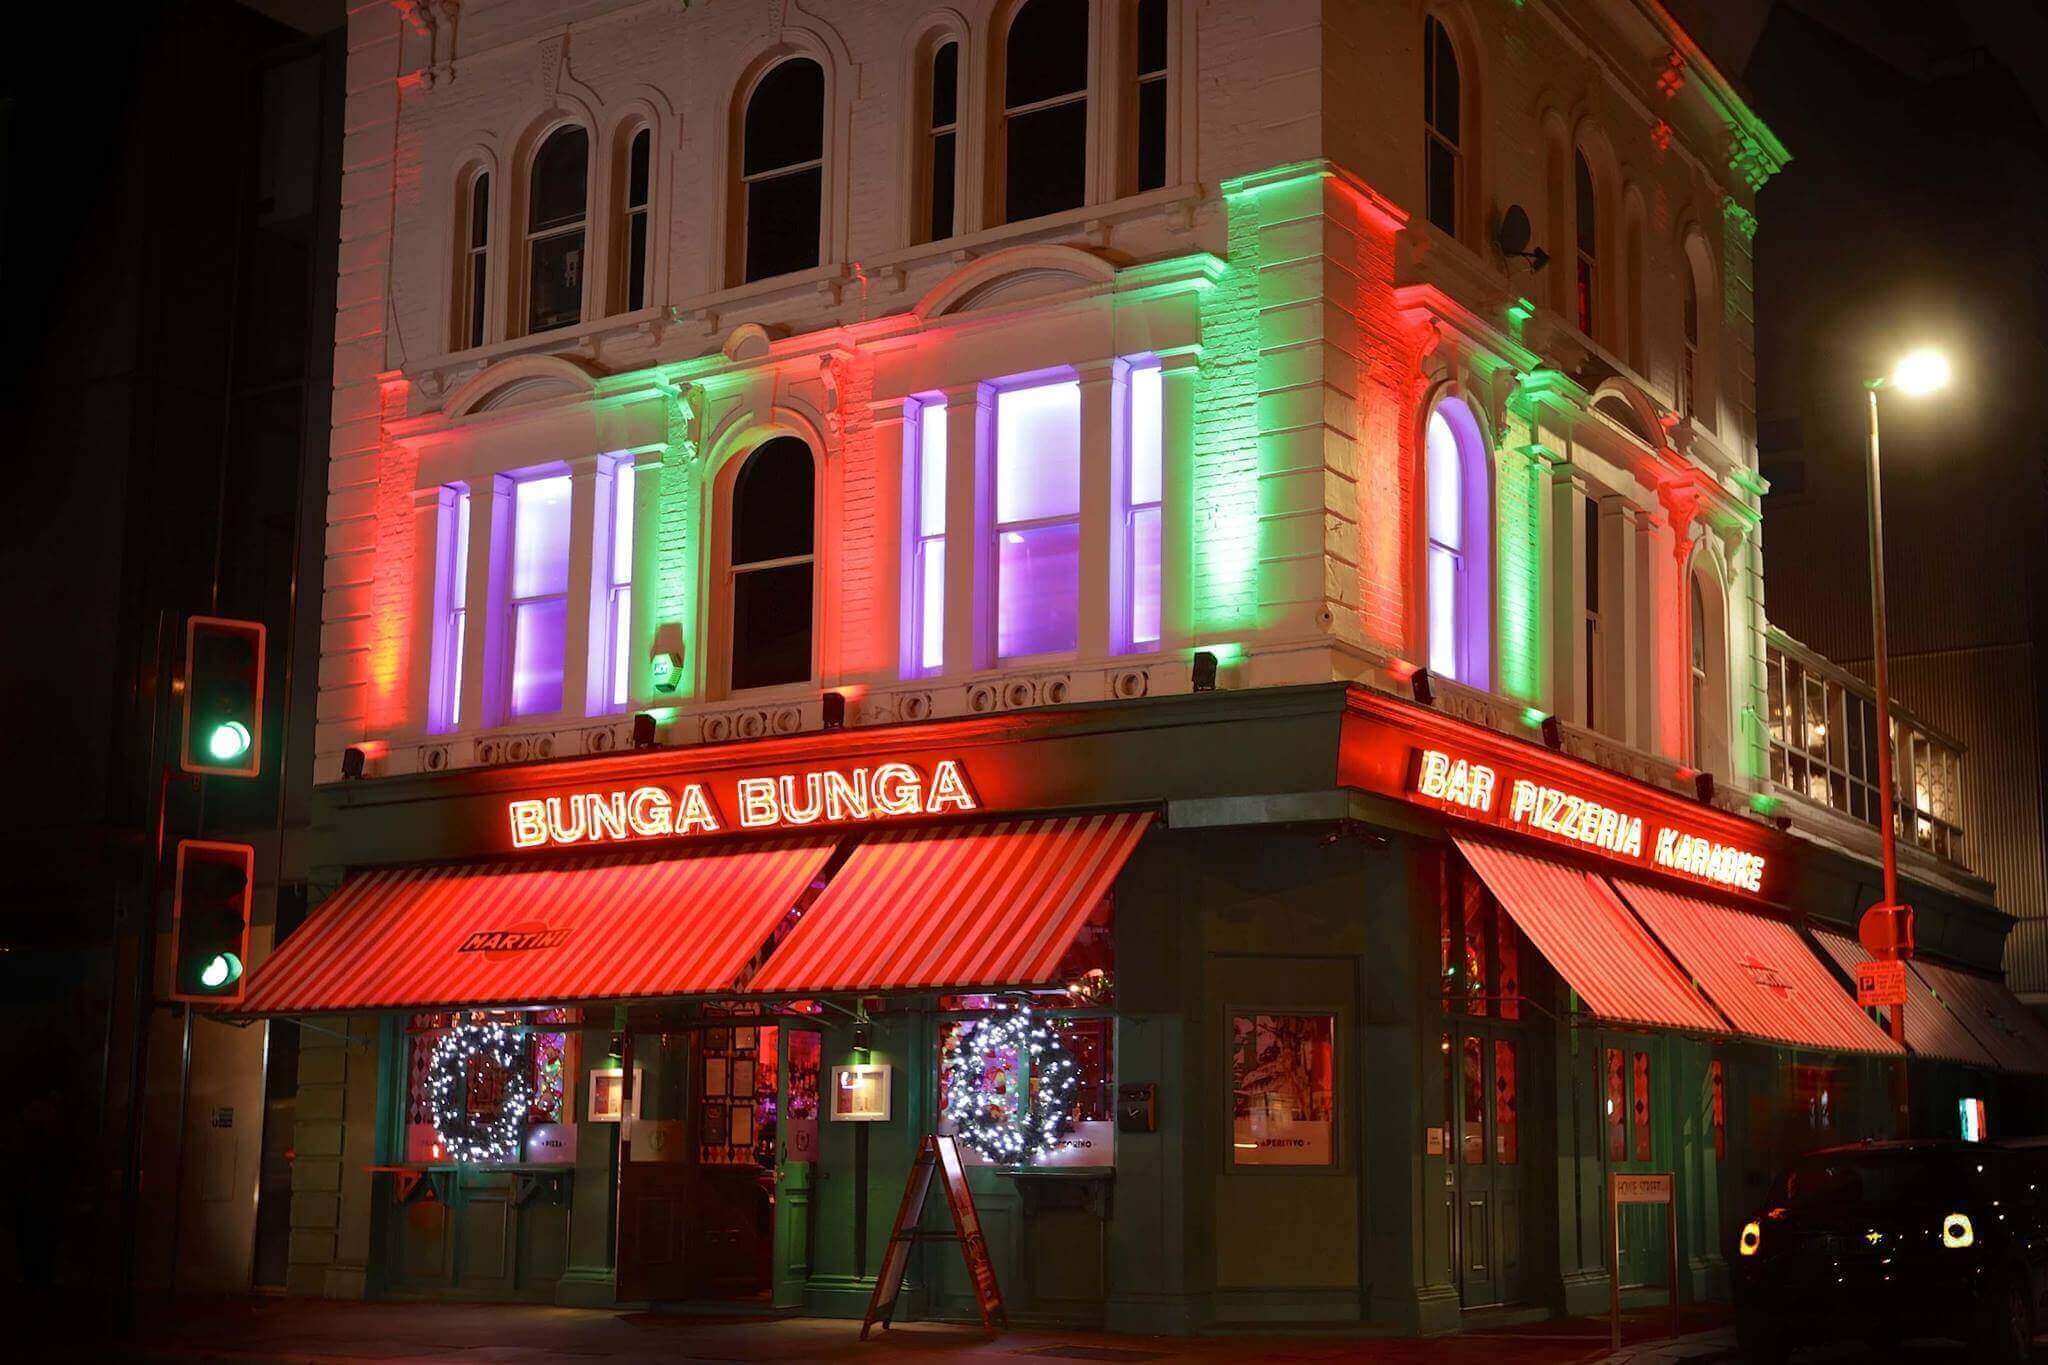 Bunga Bunga Battersea Exterior Bar and Pizzeria